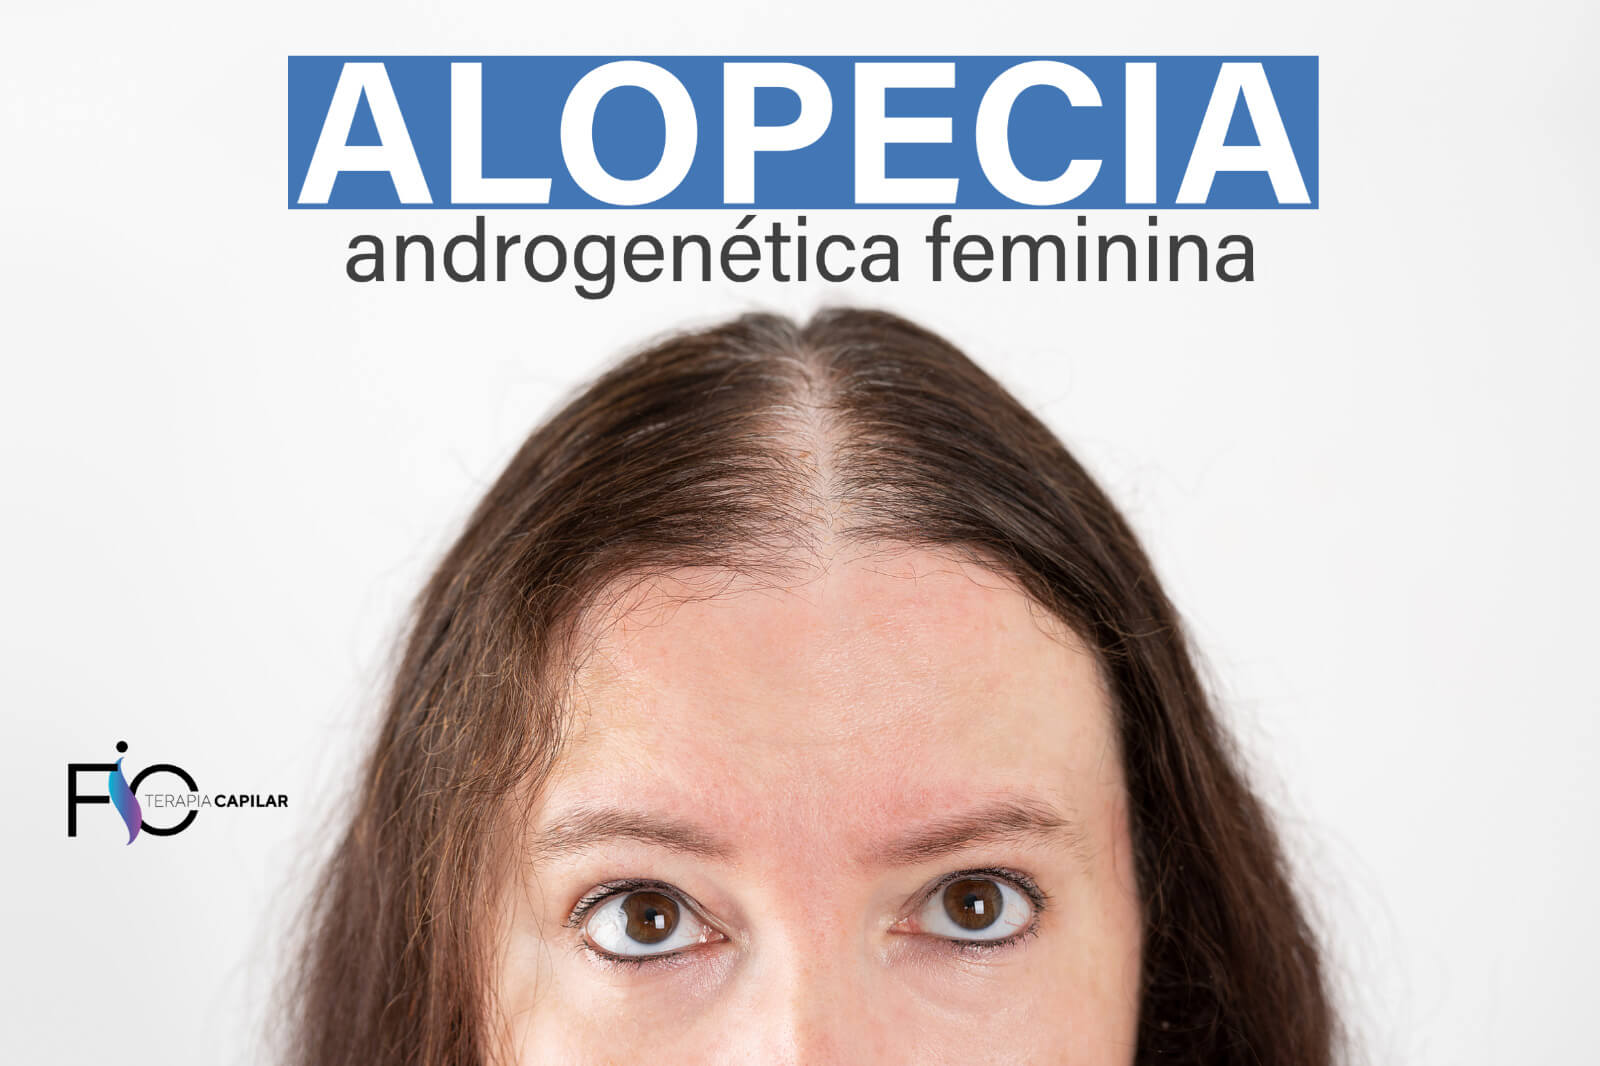 Alopecia androgenética feminina